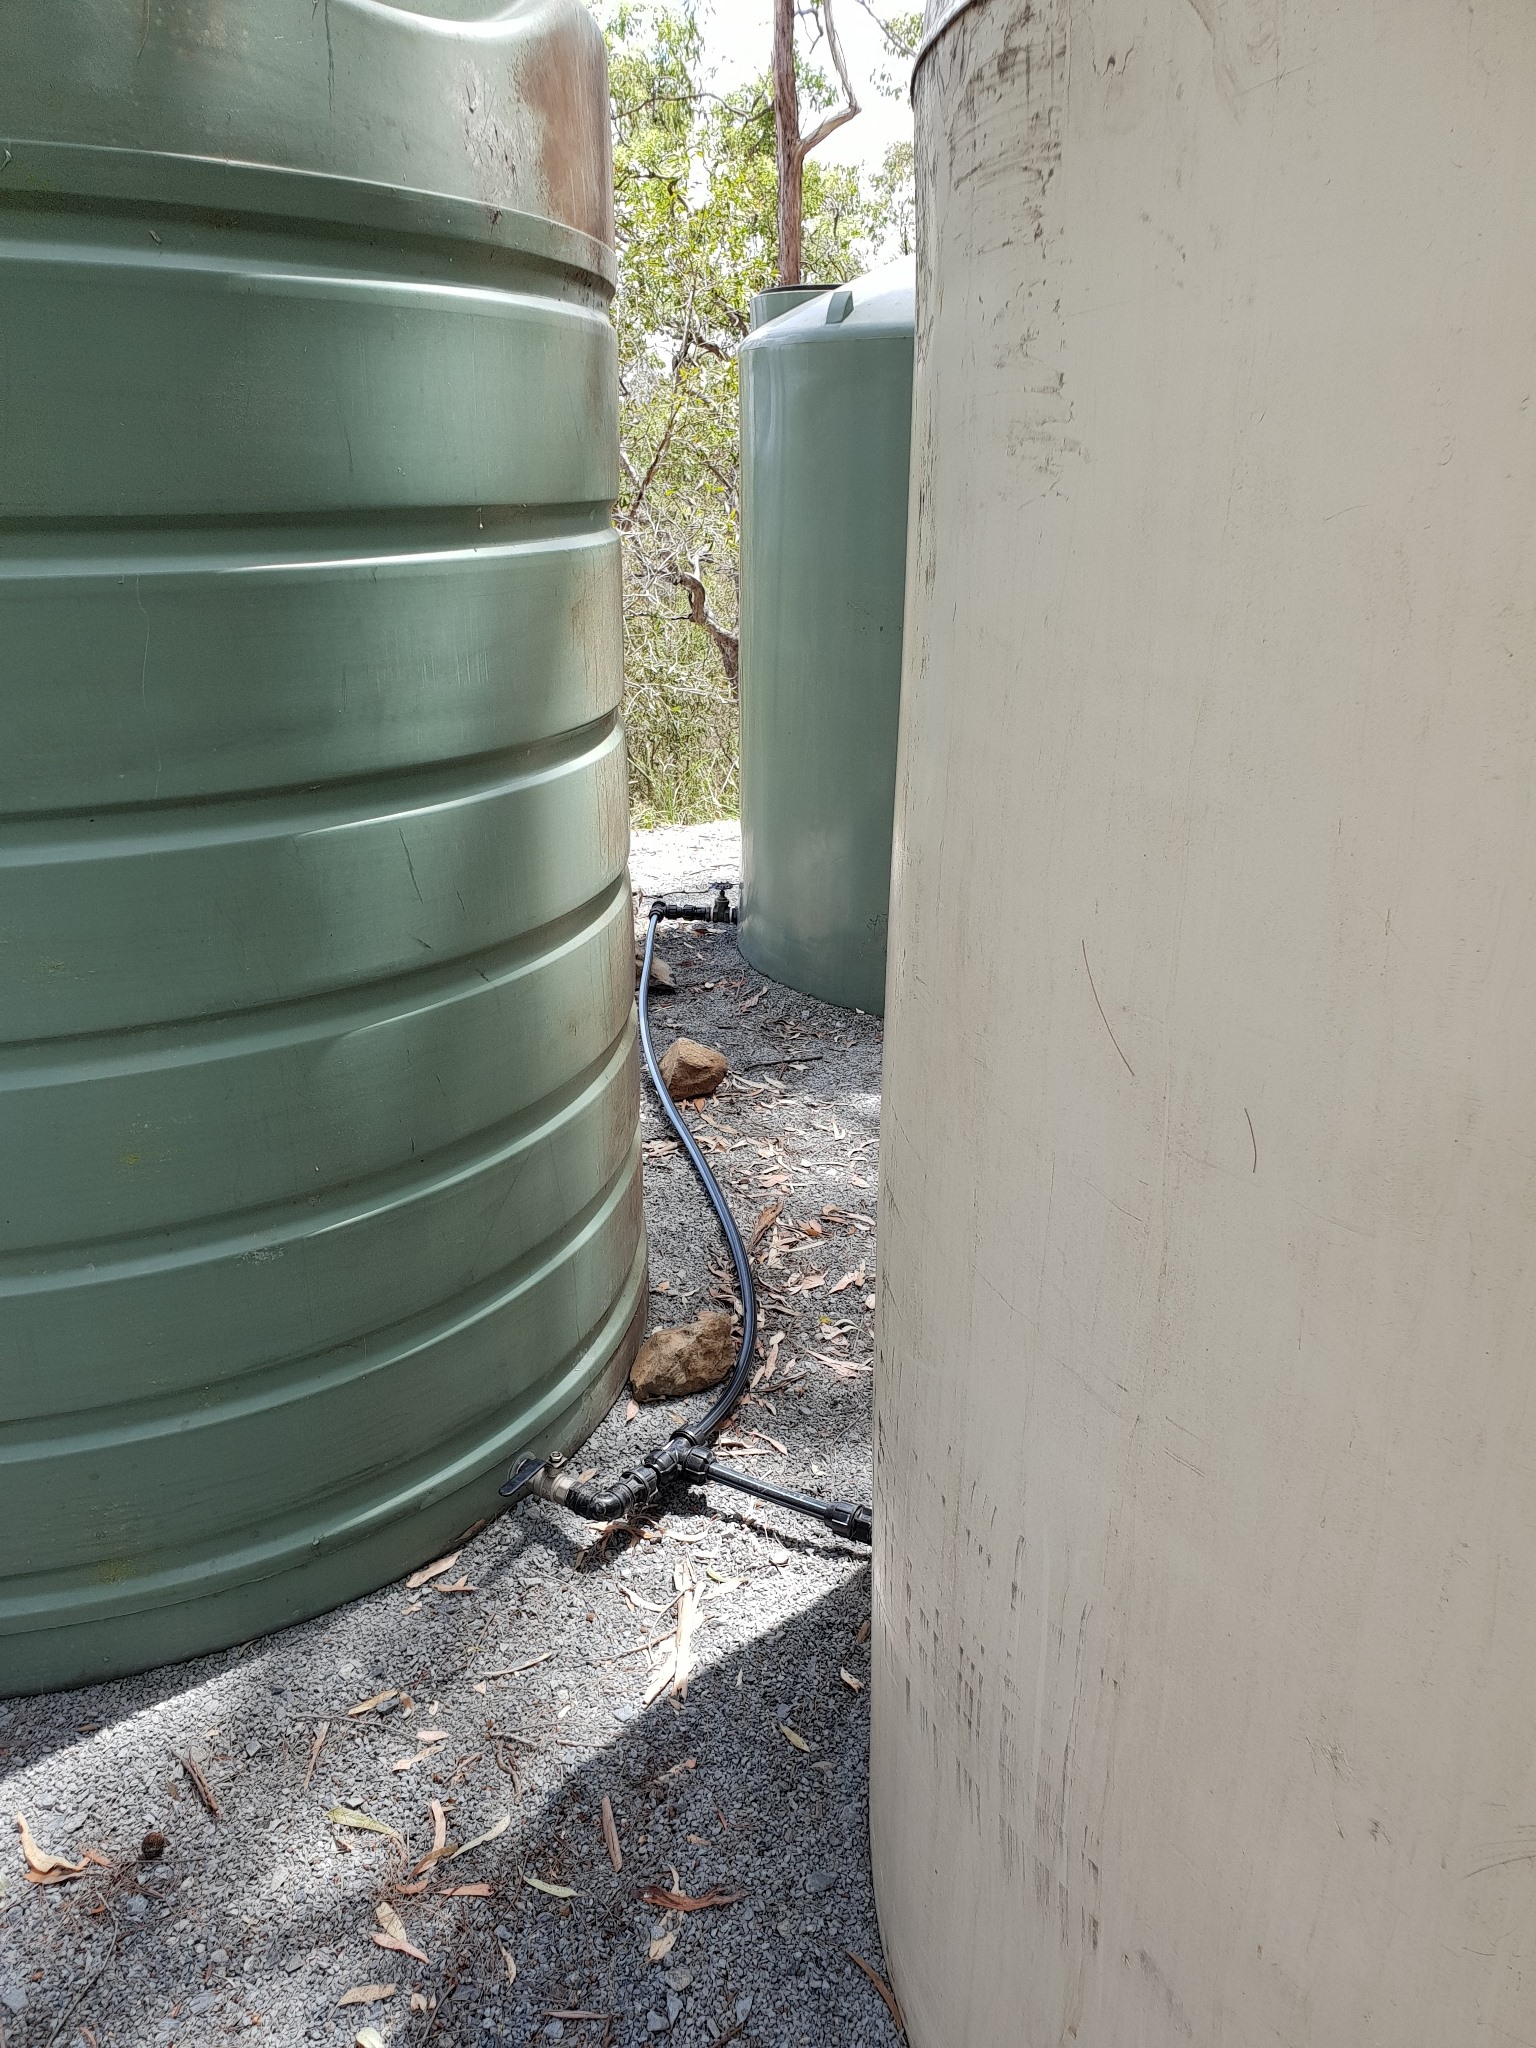 Nursery water tanks - plumbing